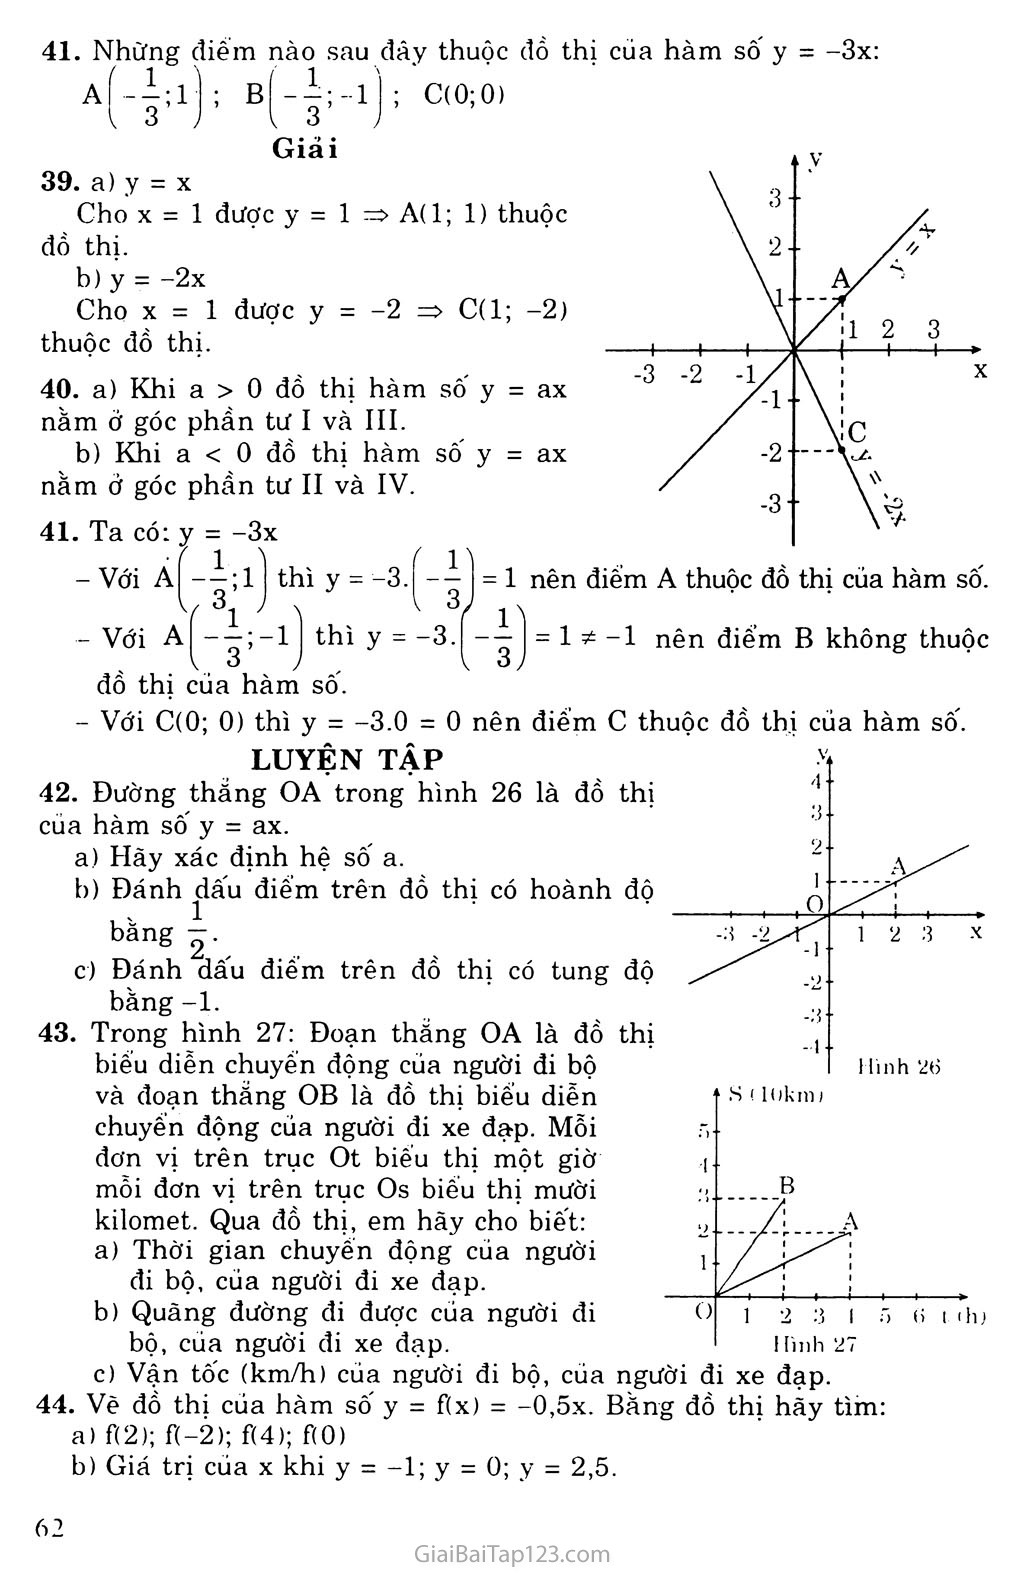 Bài 7. Đồ thị hàm số y = ax (a khác 0) trang 2